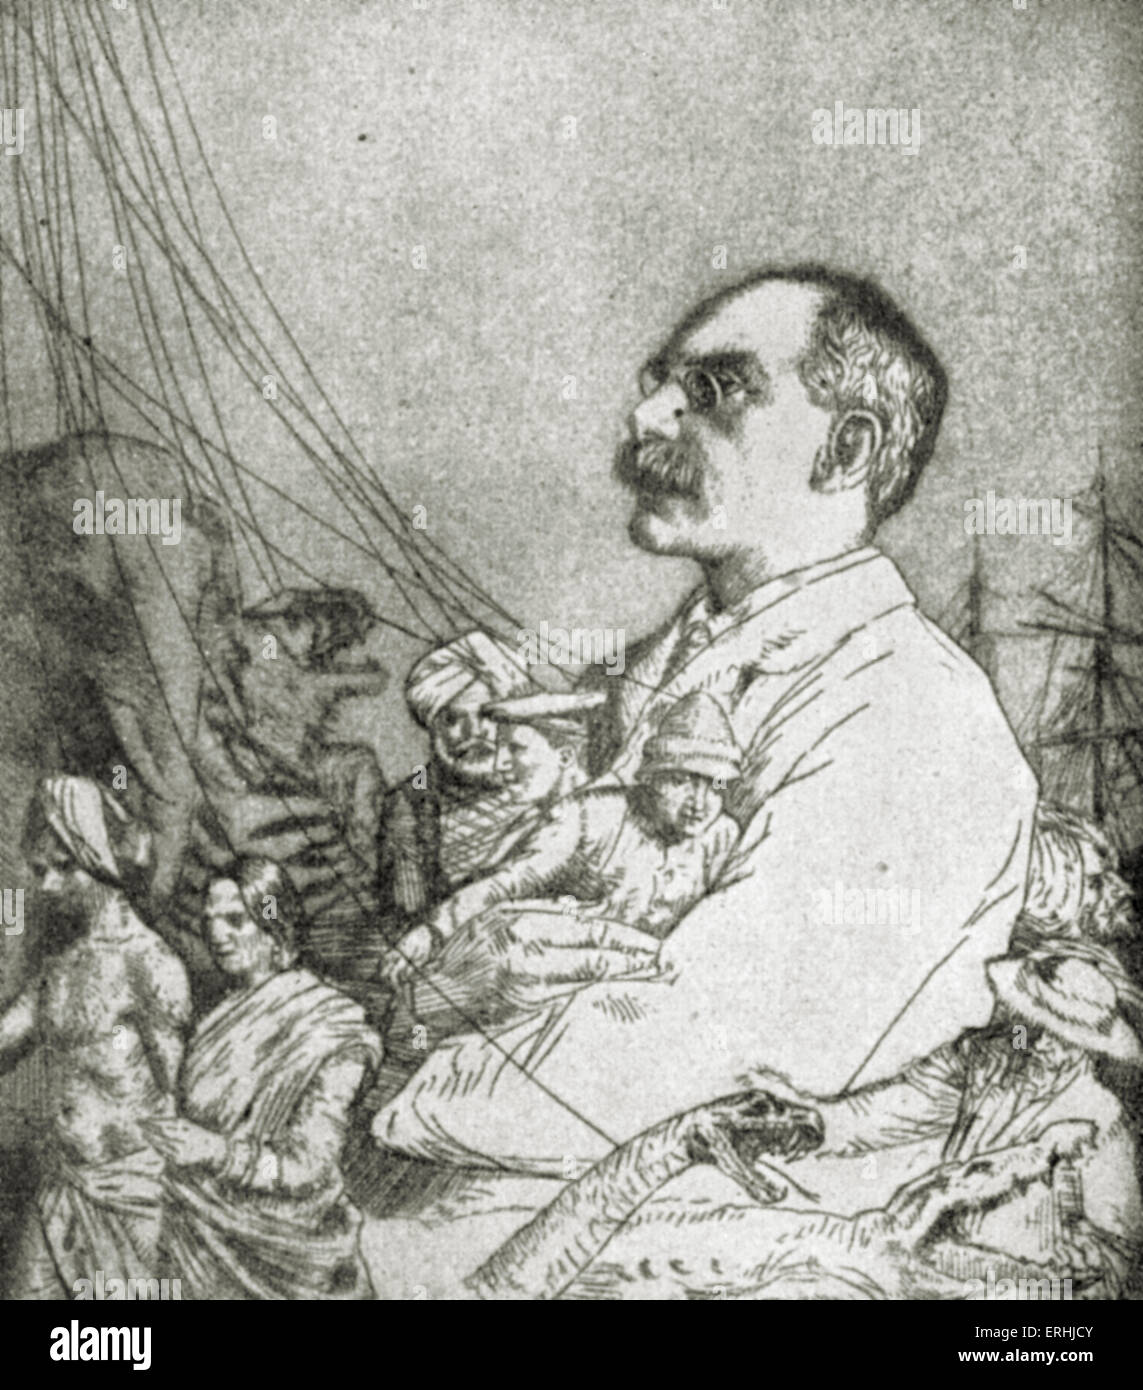 Rudyard Kipling - portrait de l'écrivain et poète anglais.30 Décembre 1865 - 18 janvier 1936. Banque D'Images